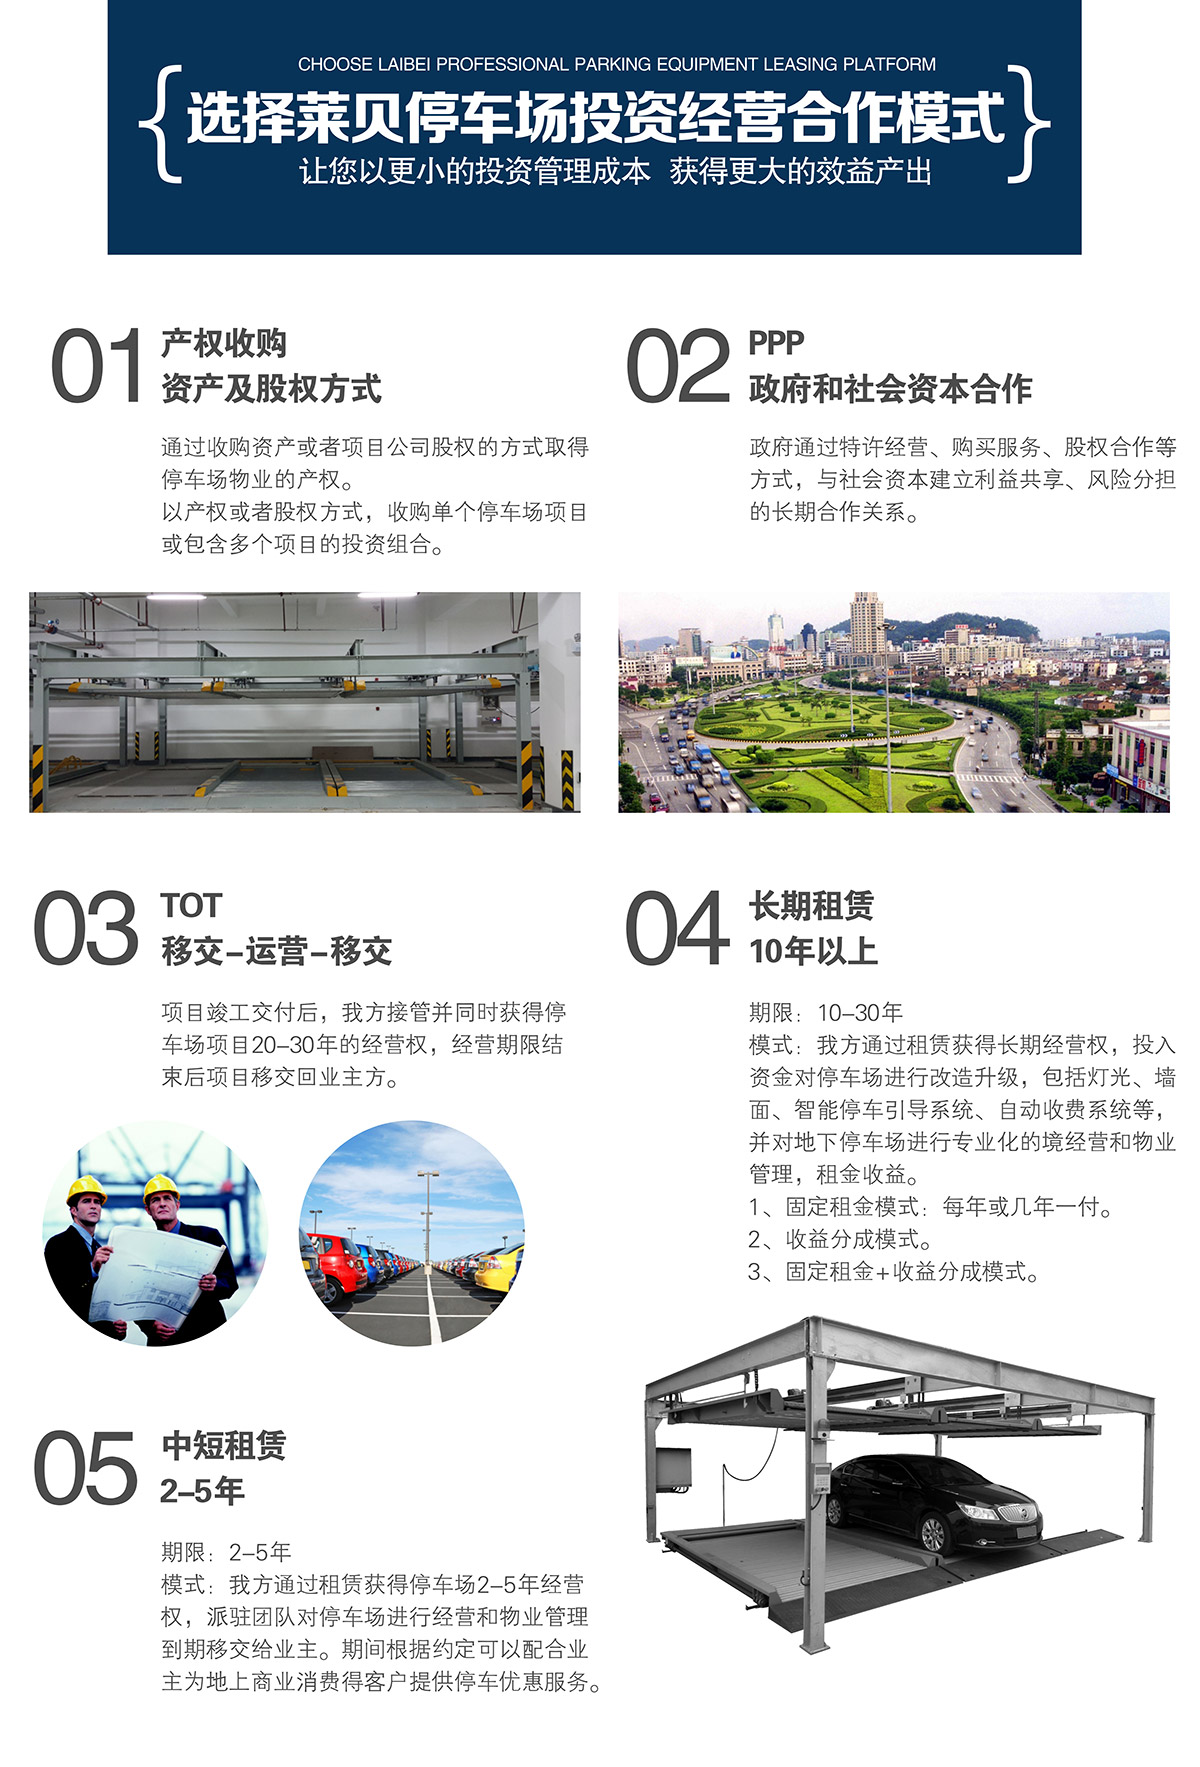 贵州莱贝机械停车位投融资建设平台更小的租赁成本.jpg